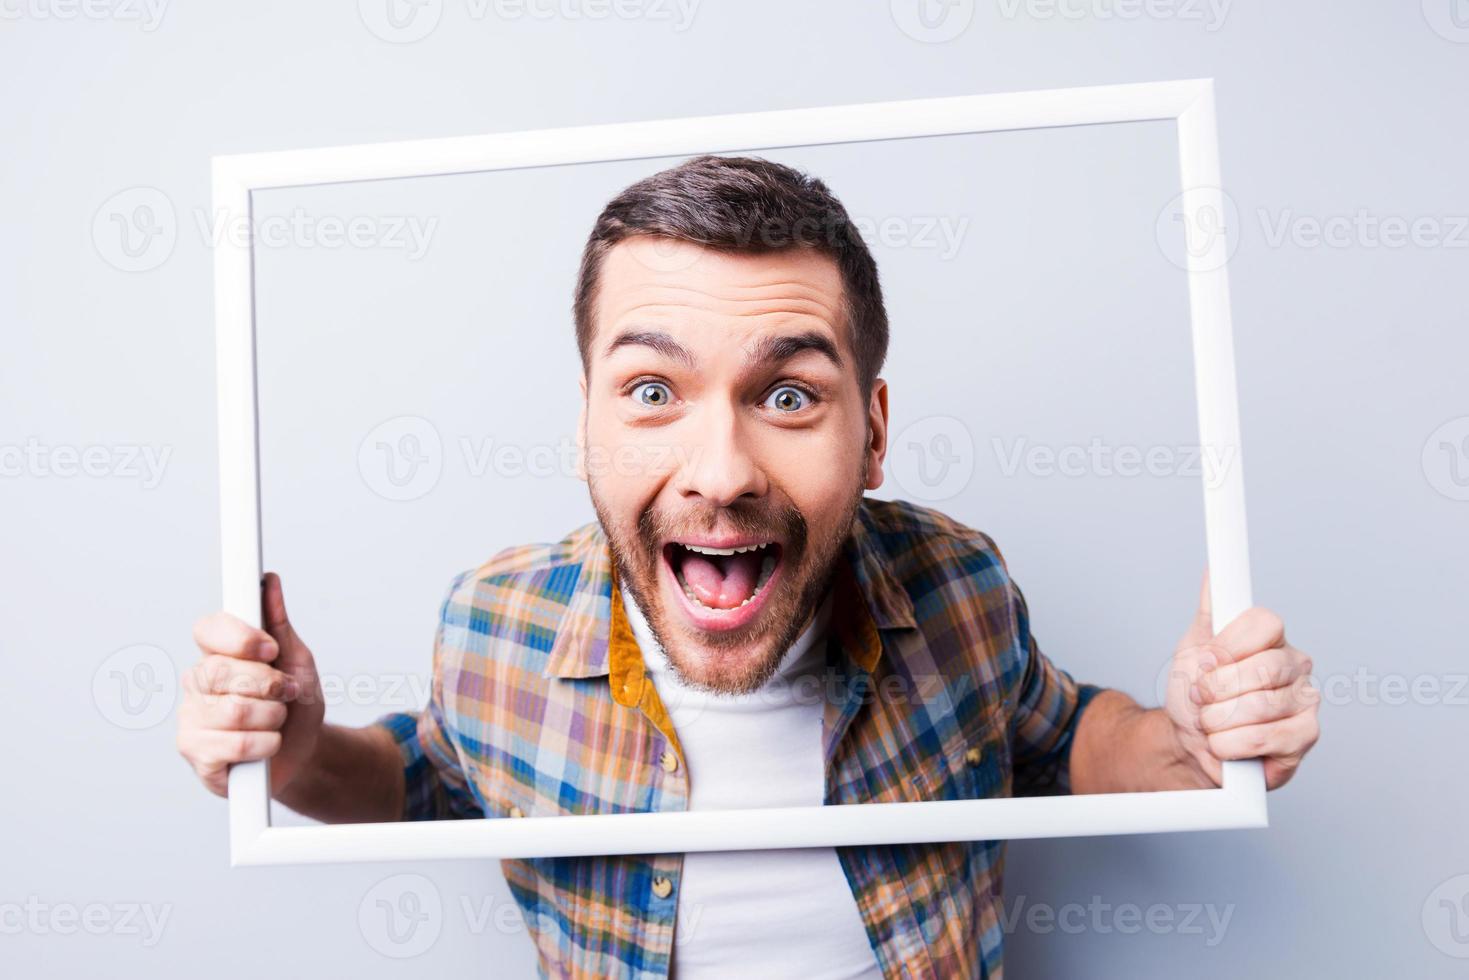 gek afbeelding. knap jong Mens in overhemd Holding afbeelding kader in voorkant van zijn gezicht en glimlachen terwijl staand tegen grijs achtergrond foto